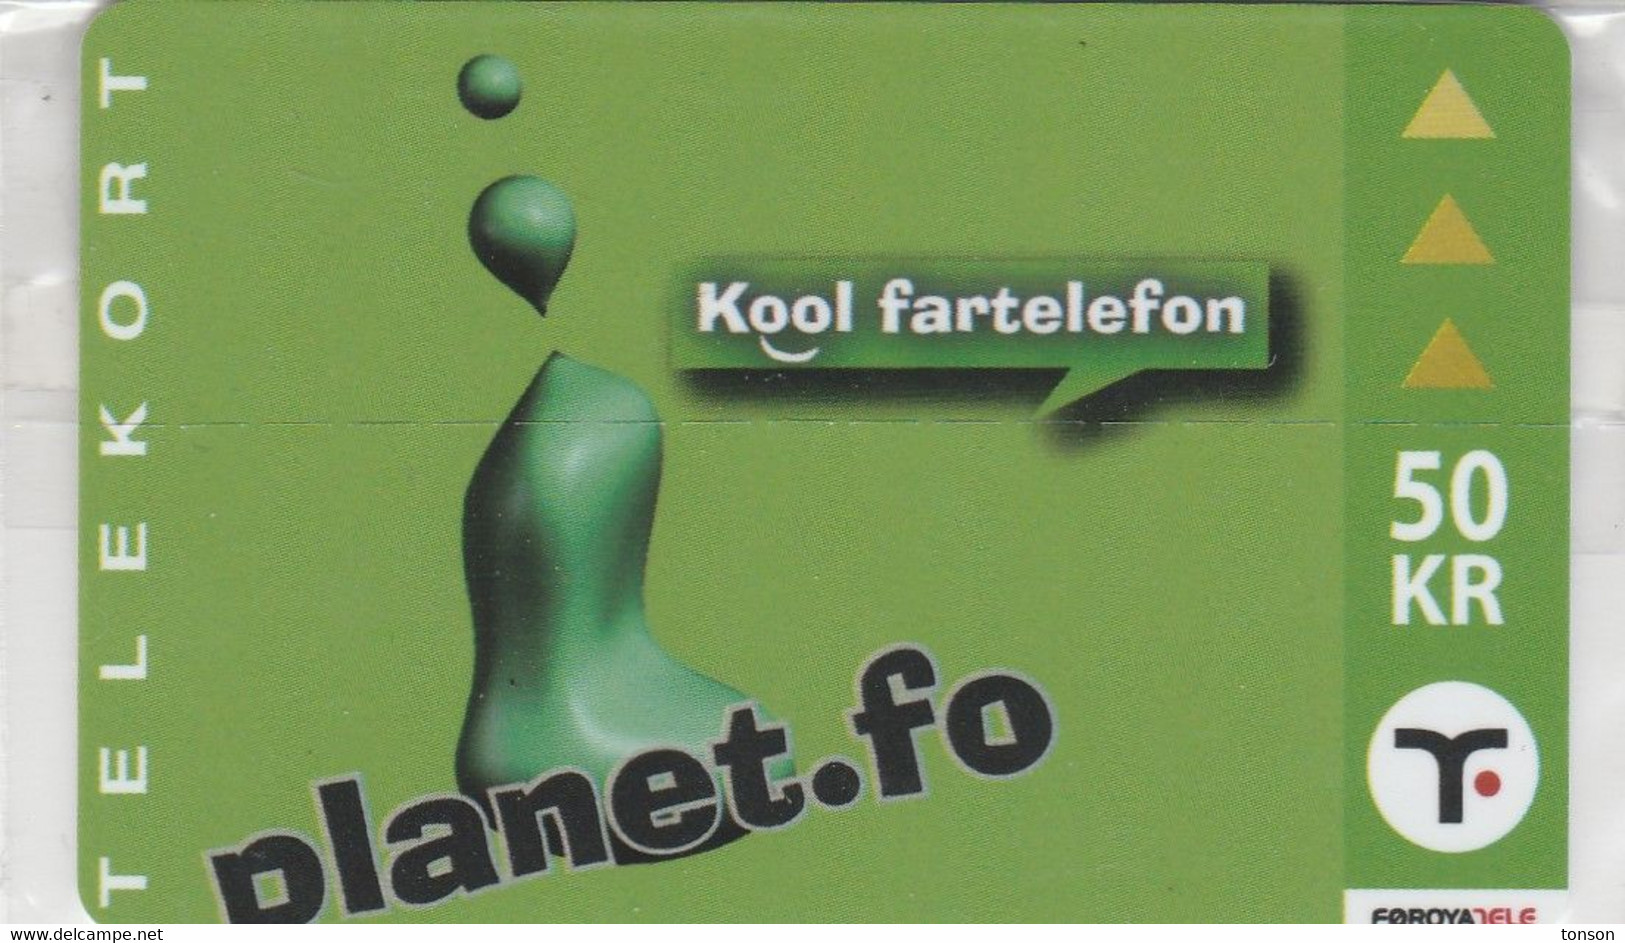 Faroe Islands, OR-003, 50 Kr ,  Planet.fo, Kool Fartelefon, Mint In Blister, 2 Scans. - Faroe Islands